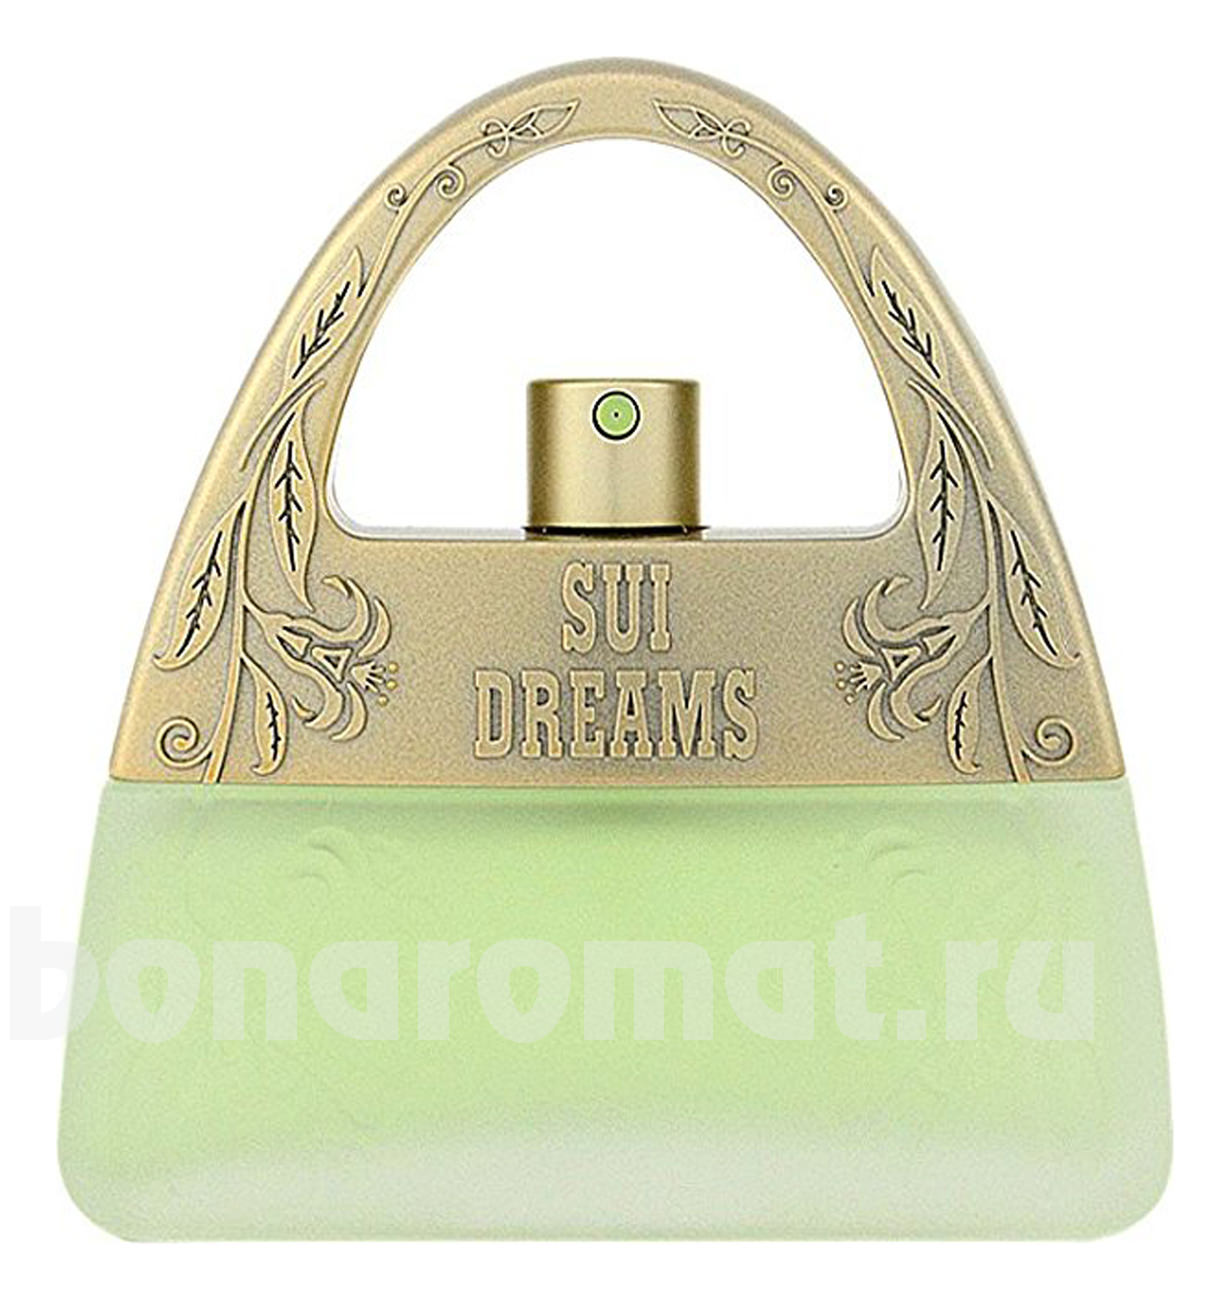 Sui Dreams In Green